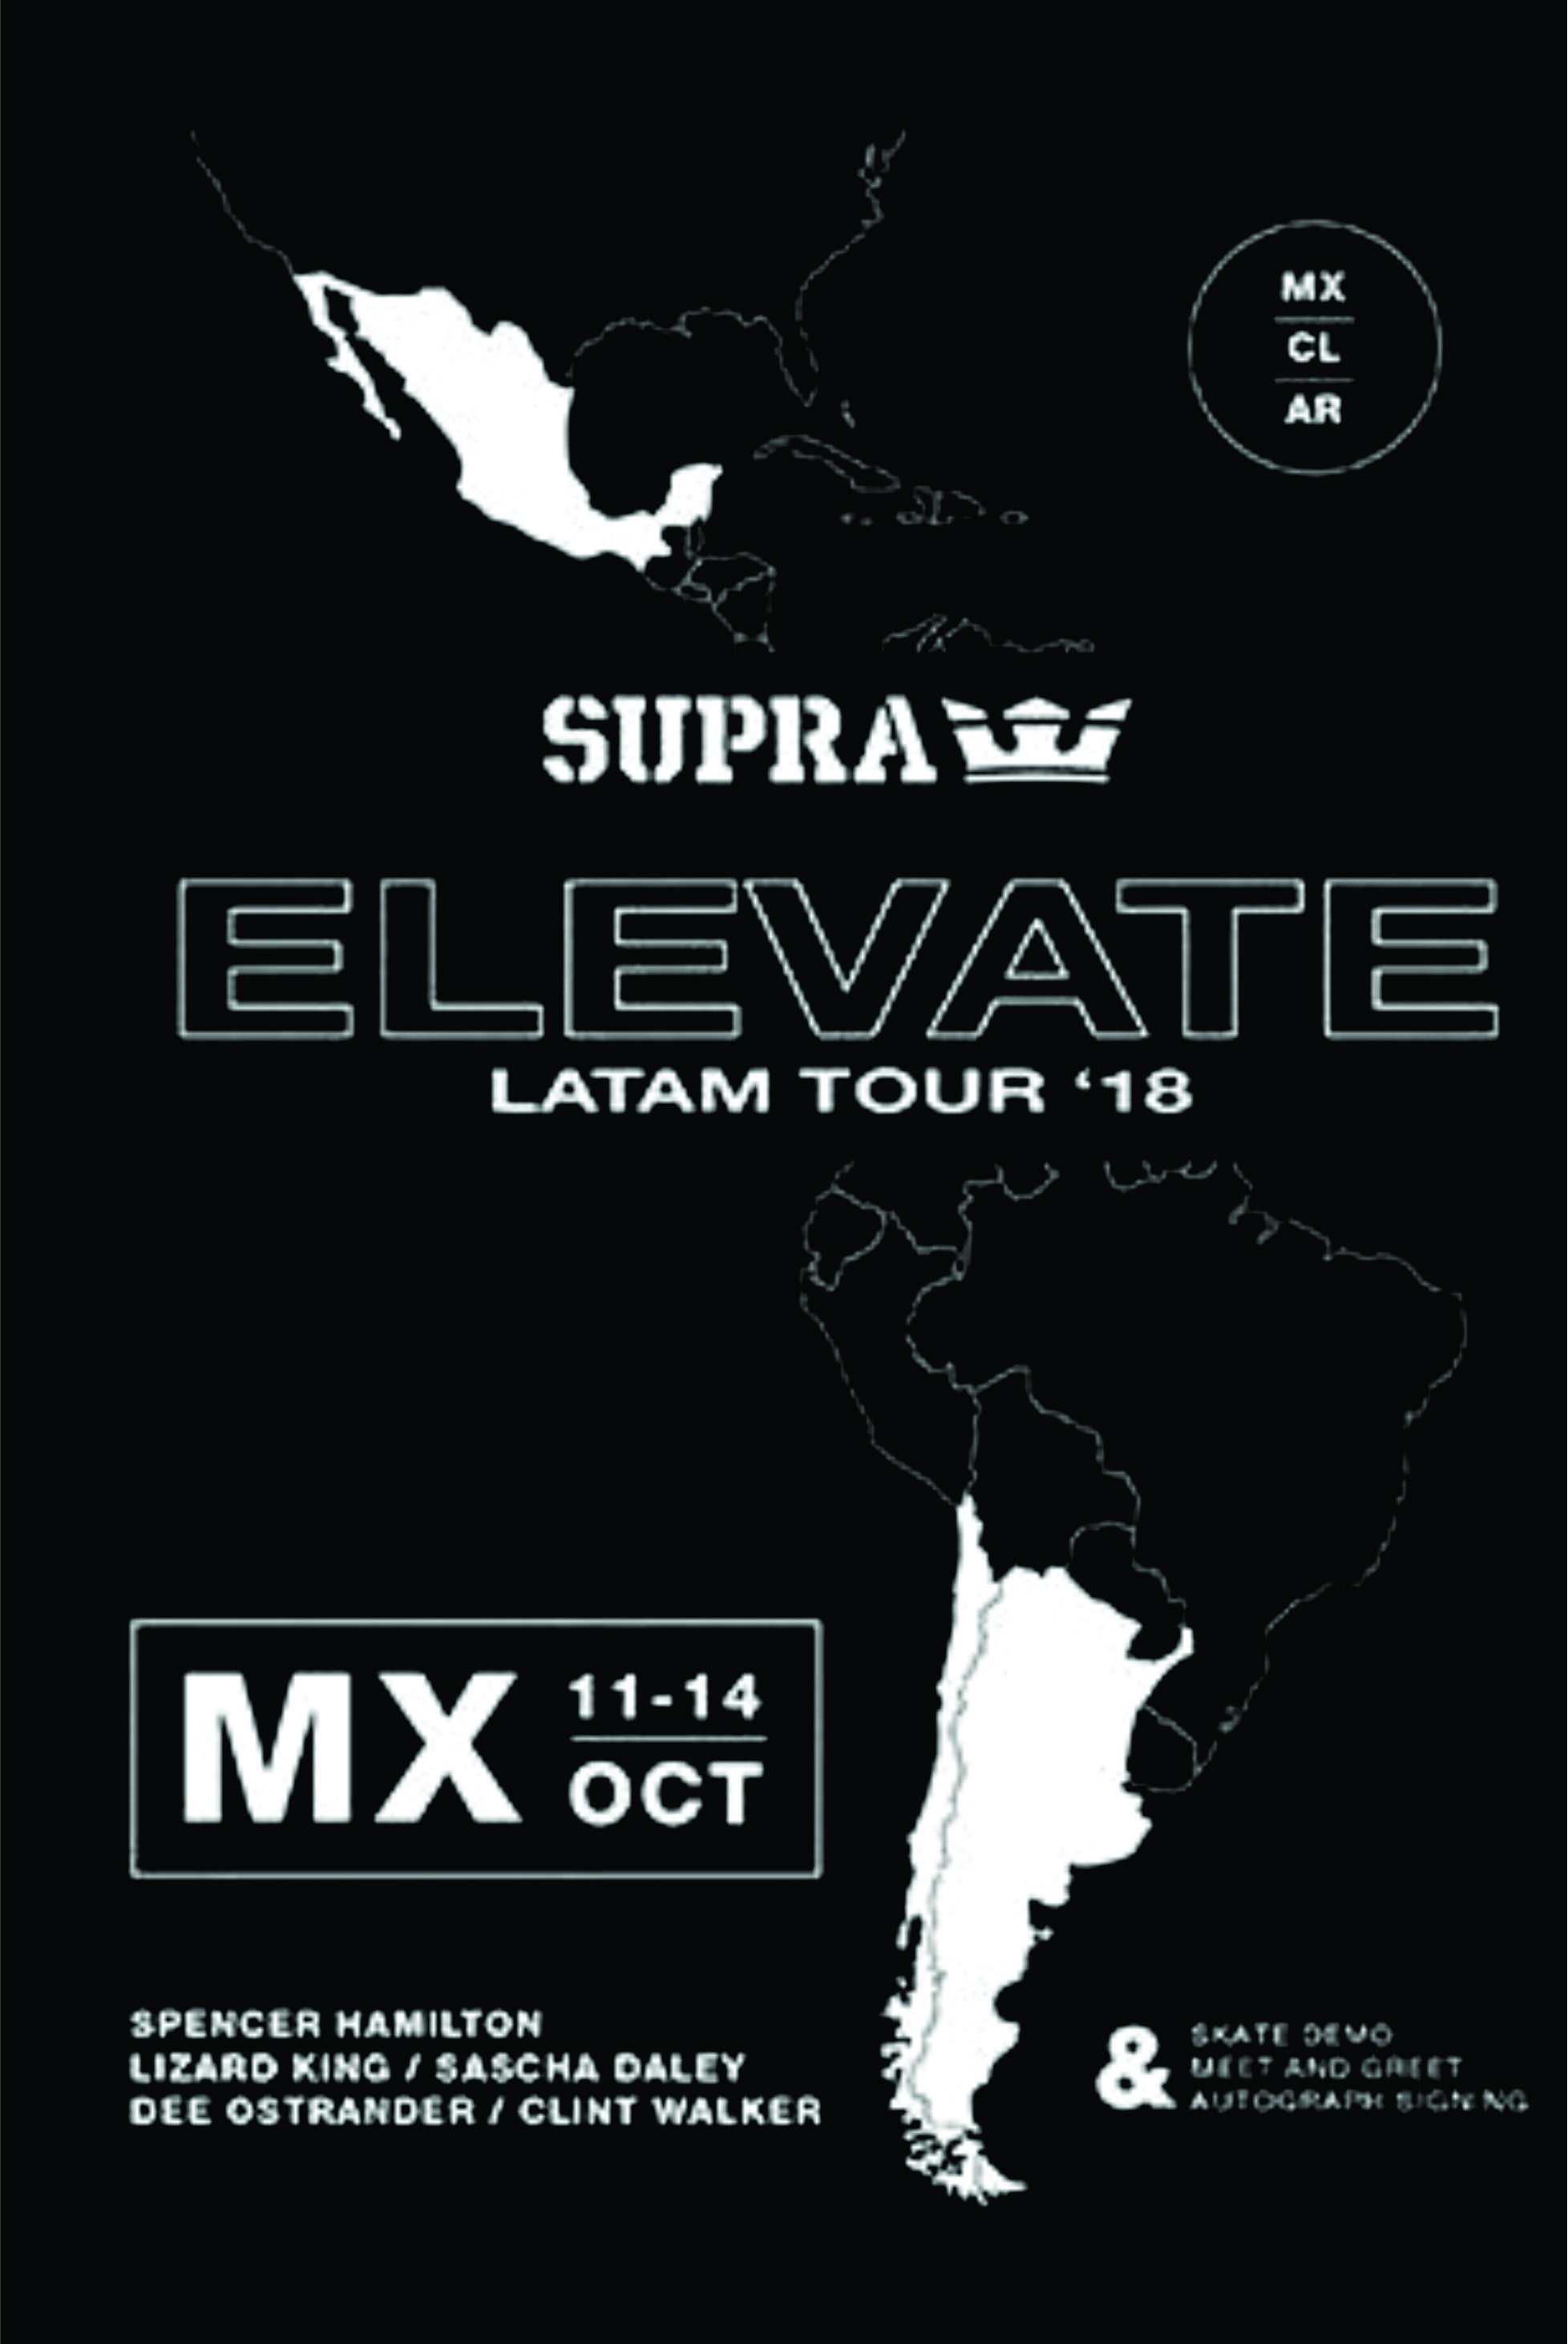 Supra - Elevate LatAm cover